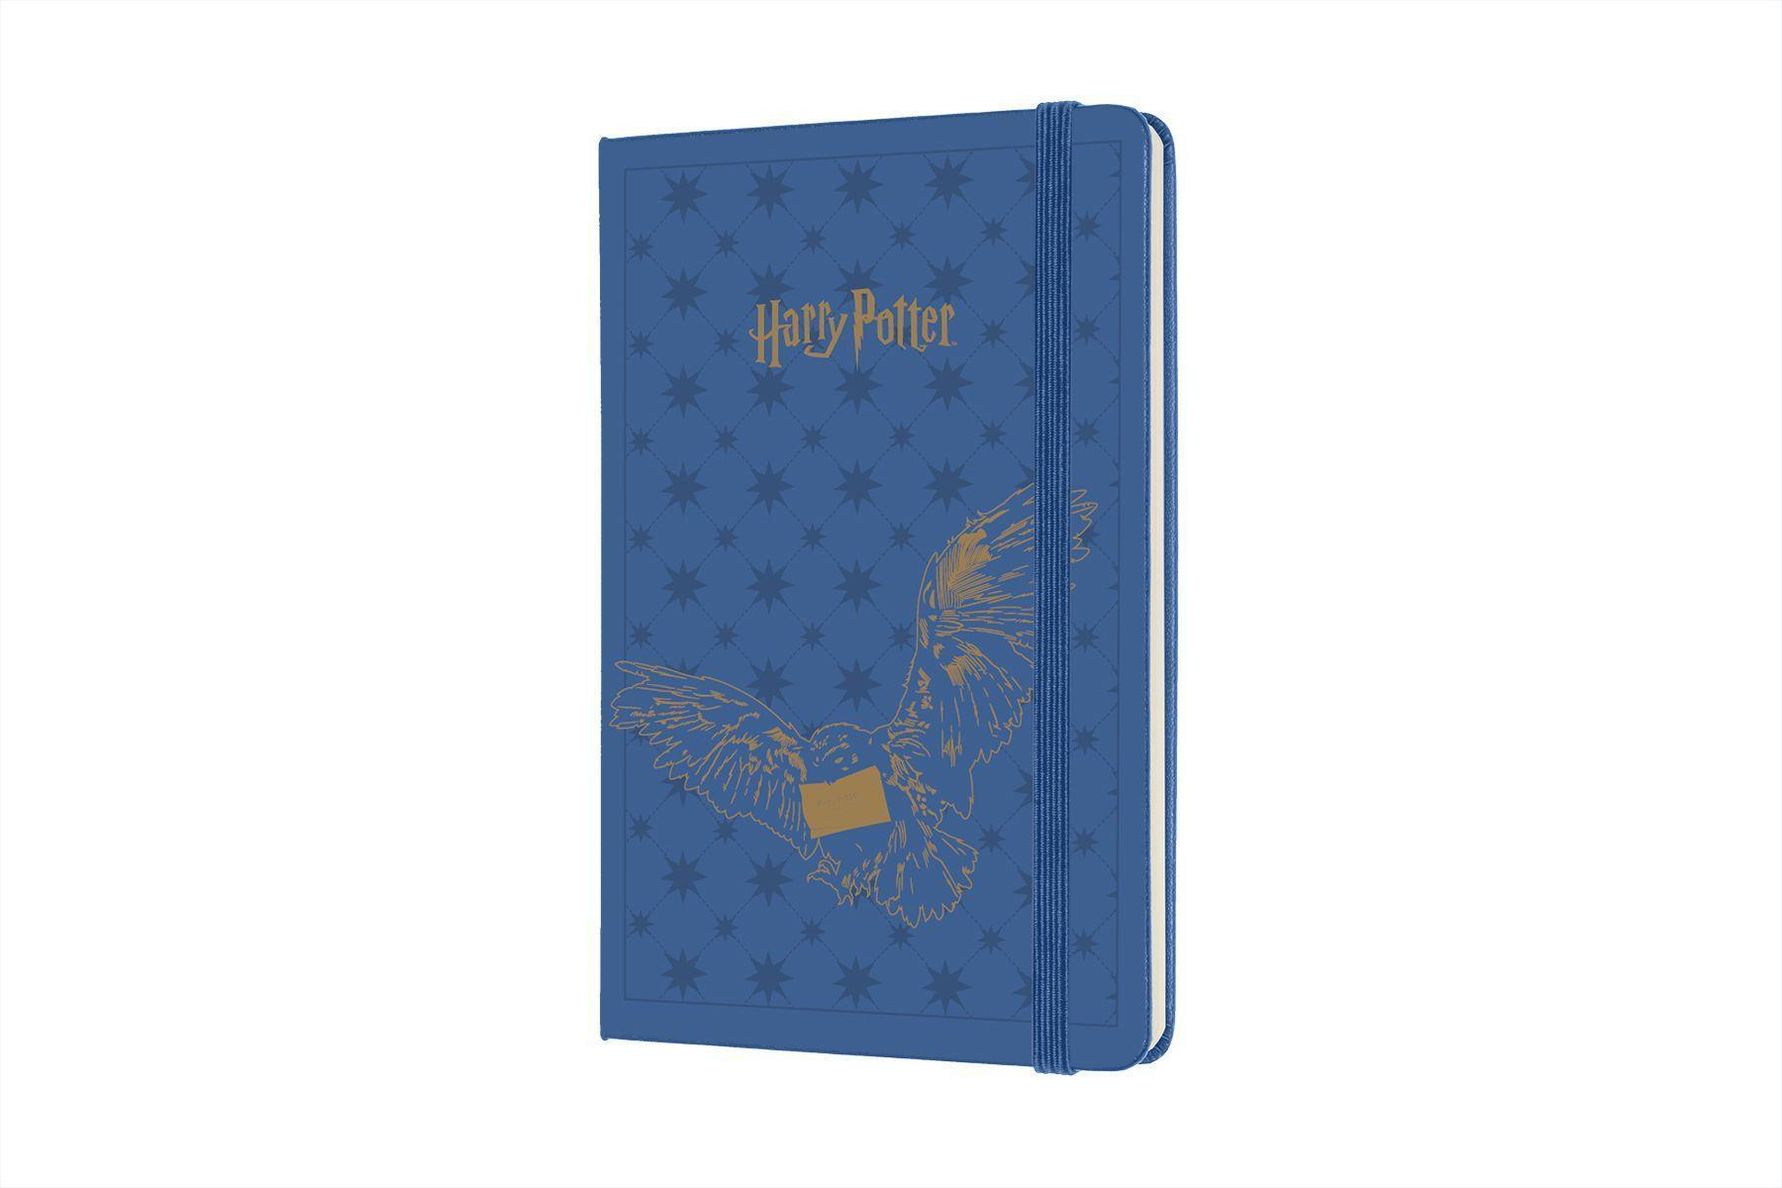 Moleskine 12 Monate Wochen Notizkalender 2022 - Harry Potter, Pocket A6,  Antwerpen Blau Buch versandkostenfrei bei Weltbild.ch bestellen